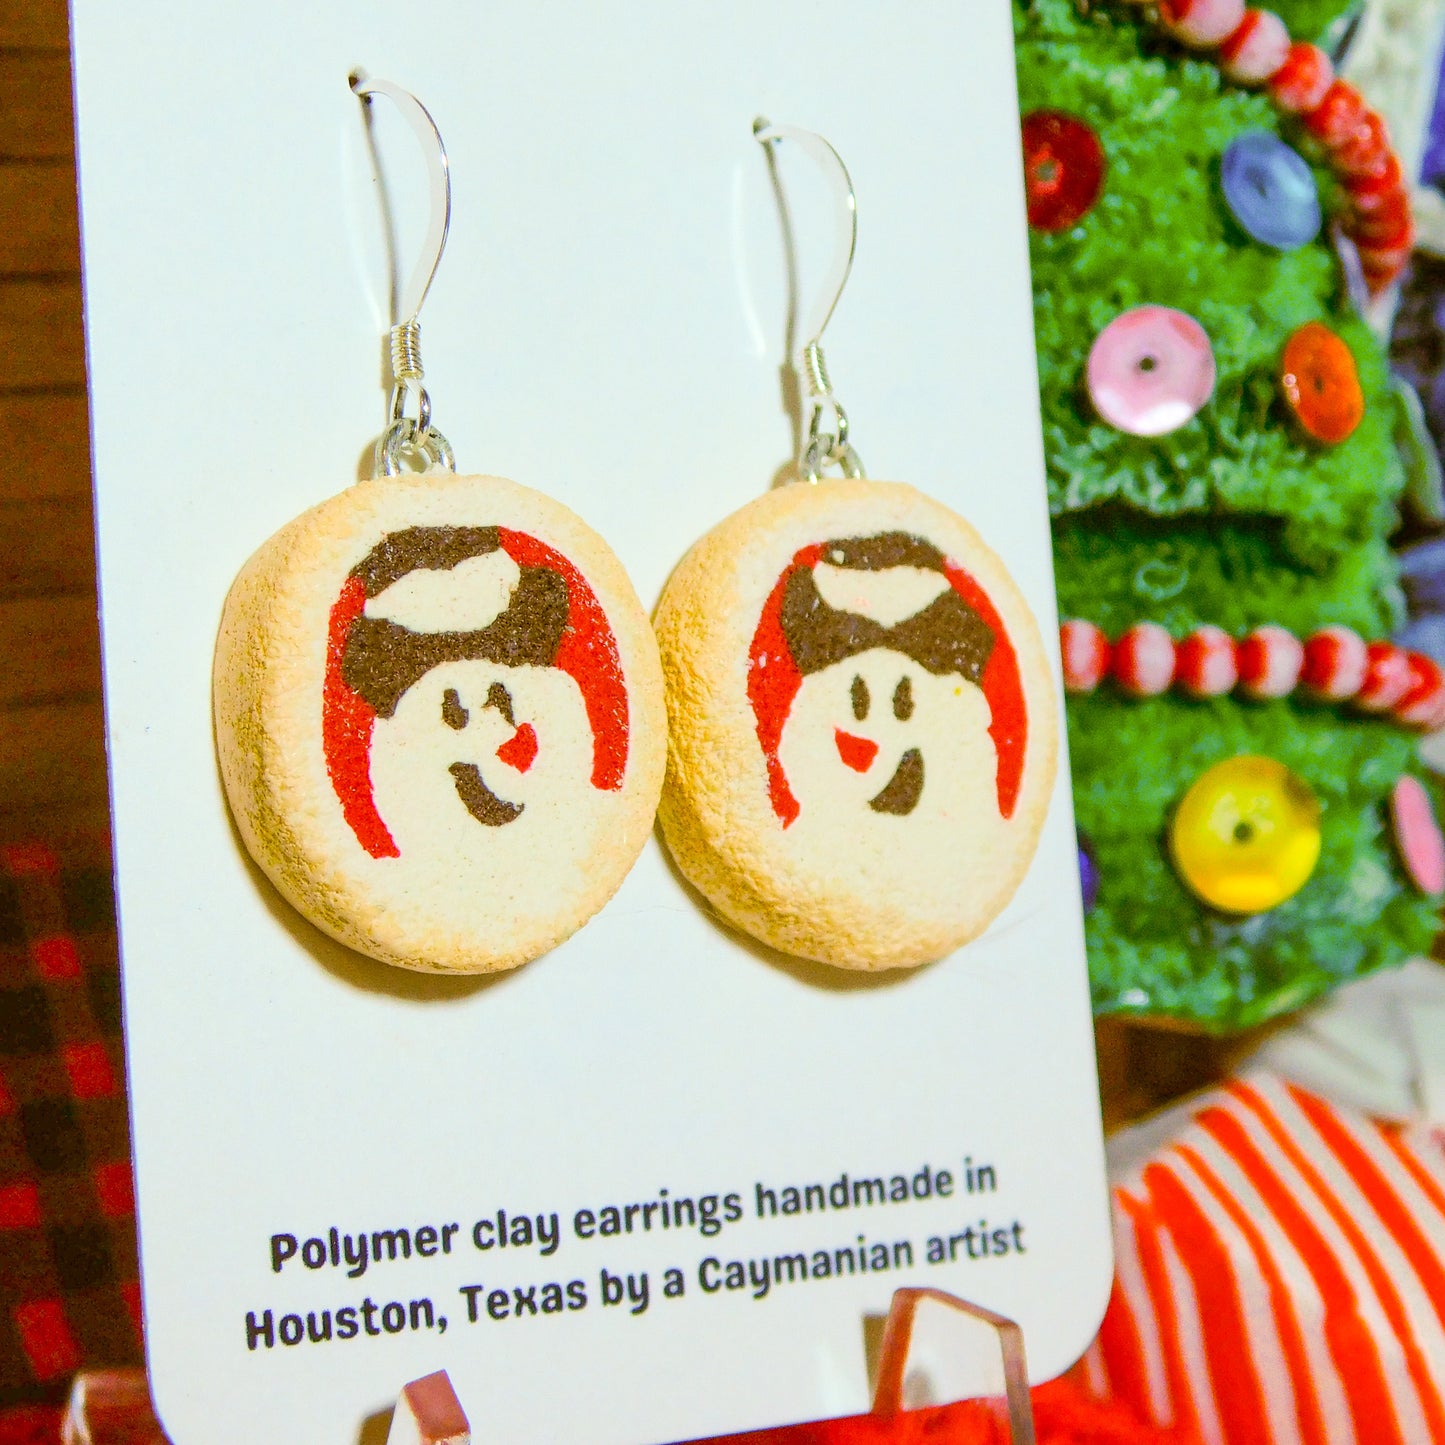 Snowman Pillsbury Inspired Sugar Cookie Earrings